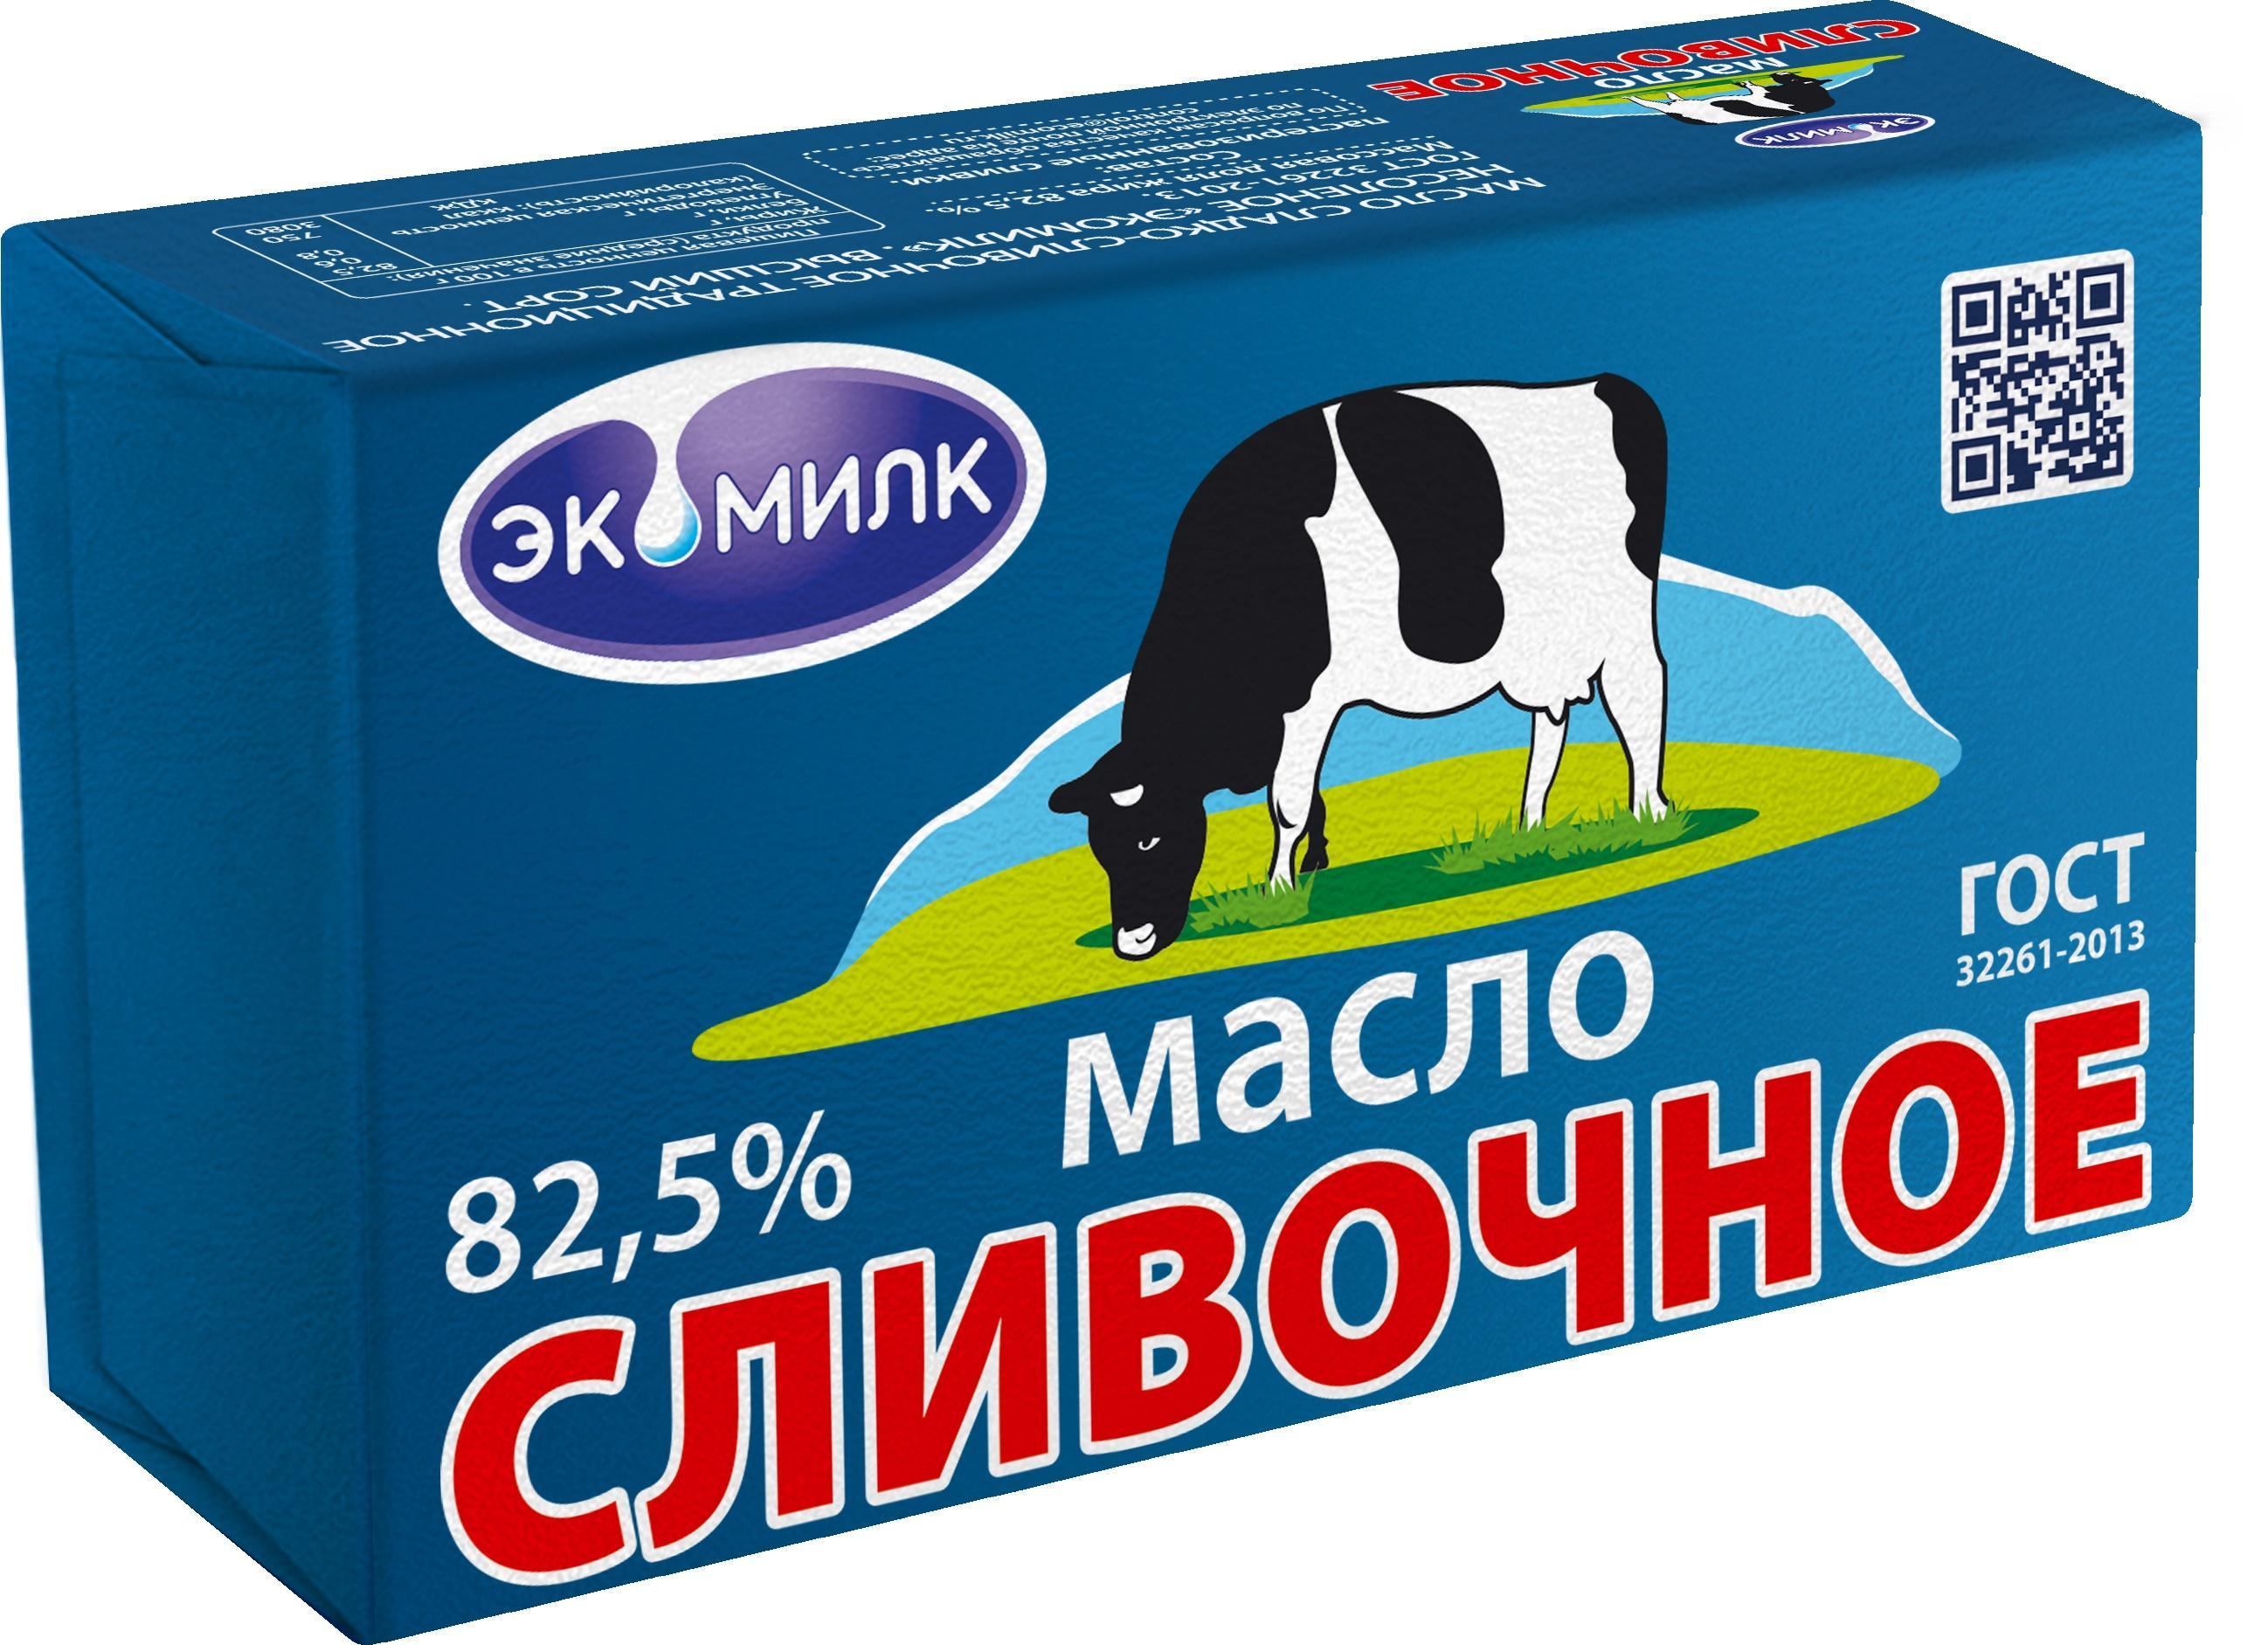 Масло Сливочное охлажденное 82,5%, 330 гр., обертка